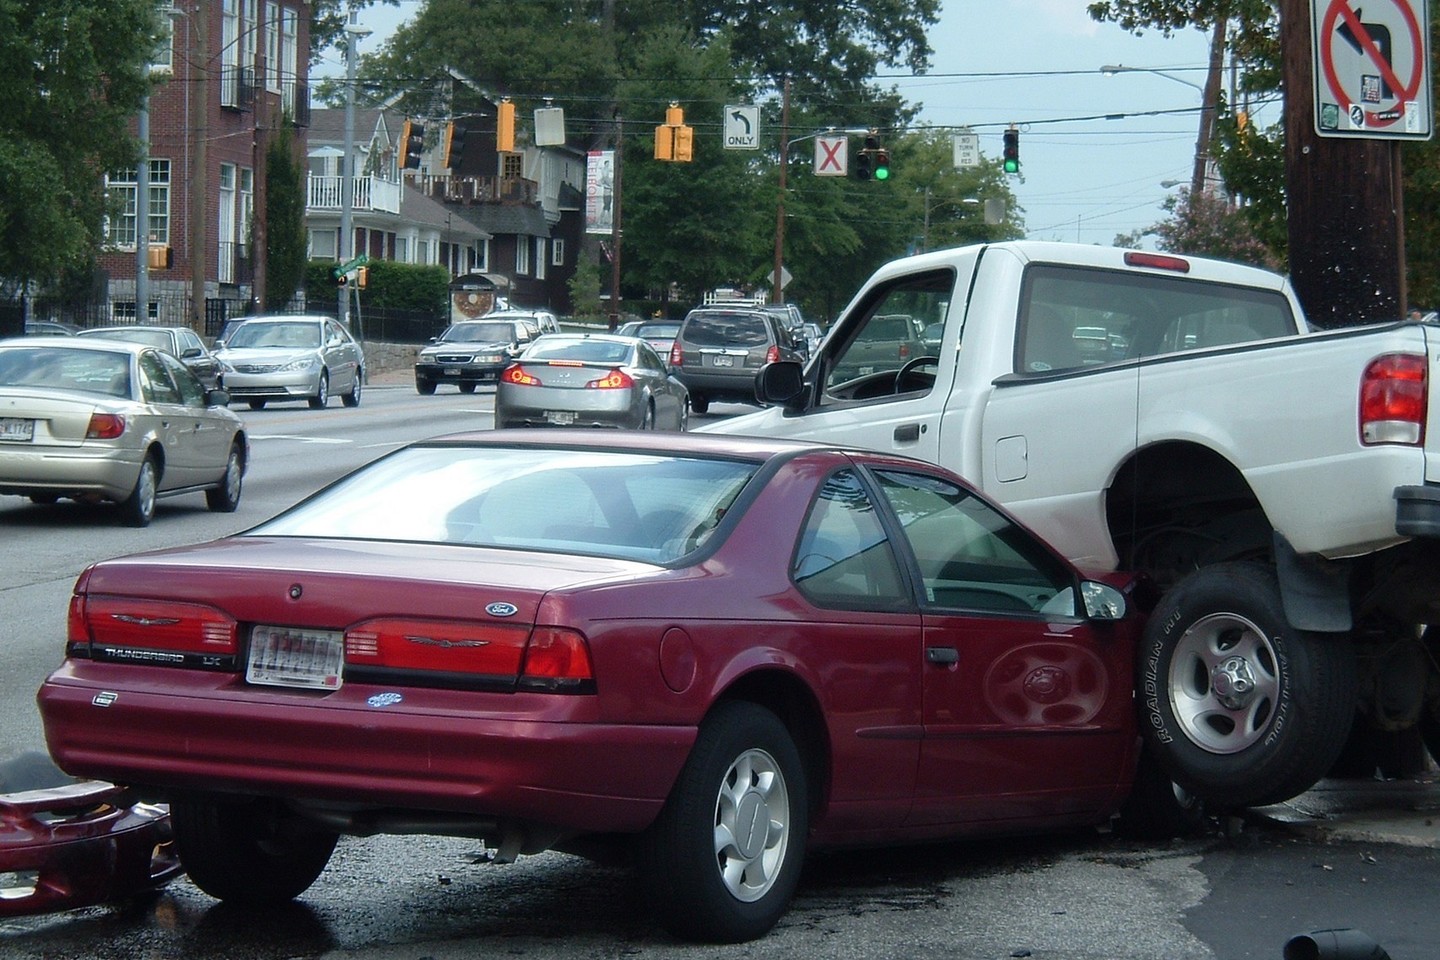 Beprotiškiausios automobilių avarijos nustebins ir visko mačiusius vairuotojus.<br>Glen Edelson/Flickr.com nuotr.